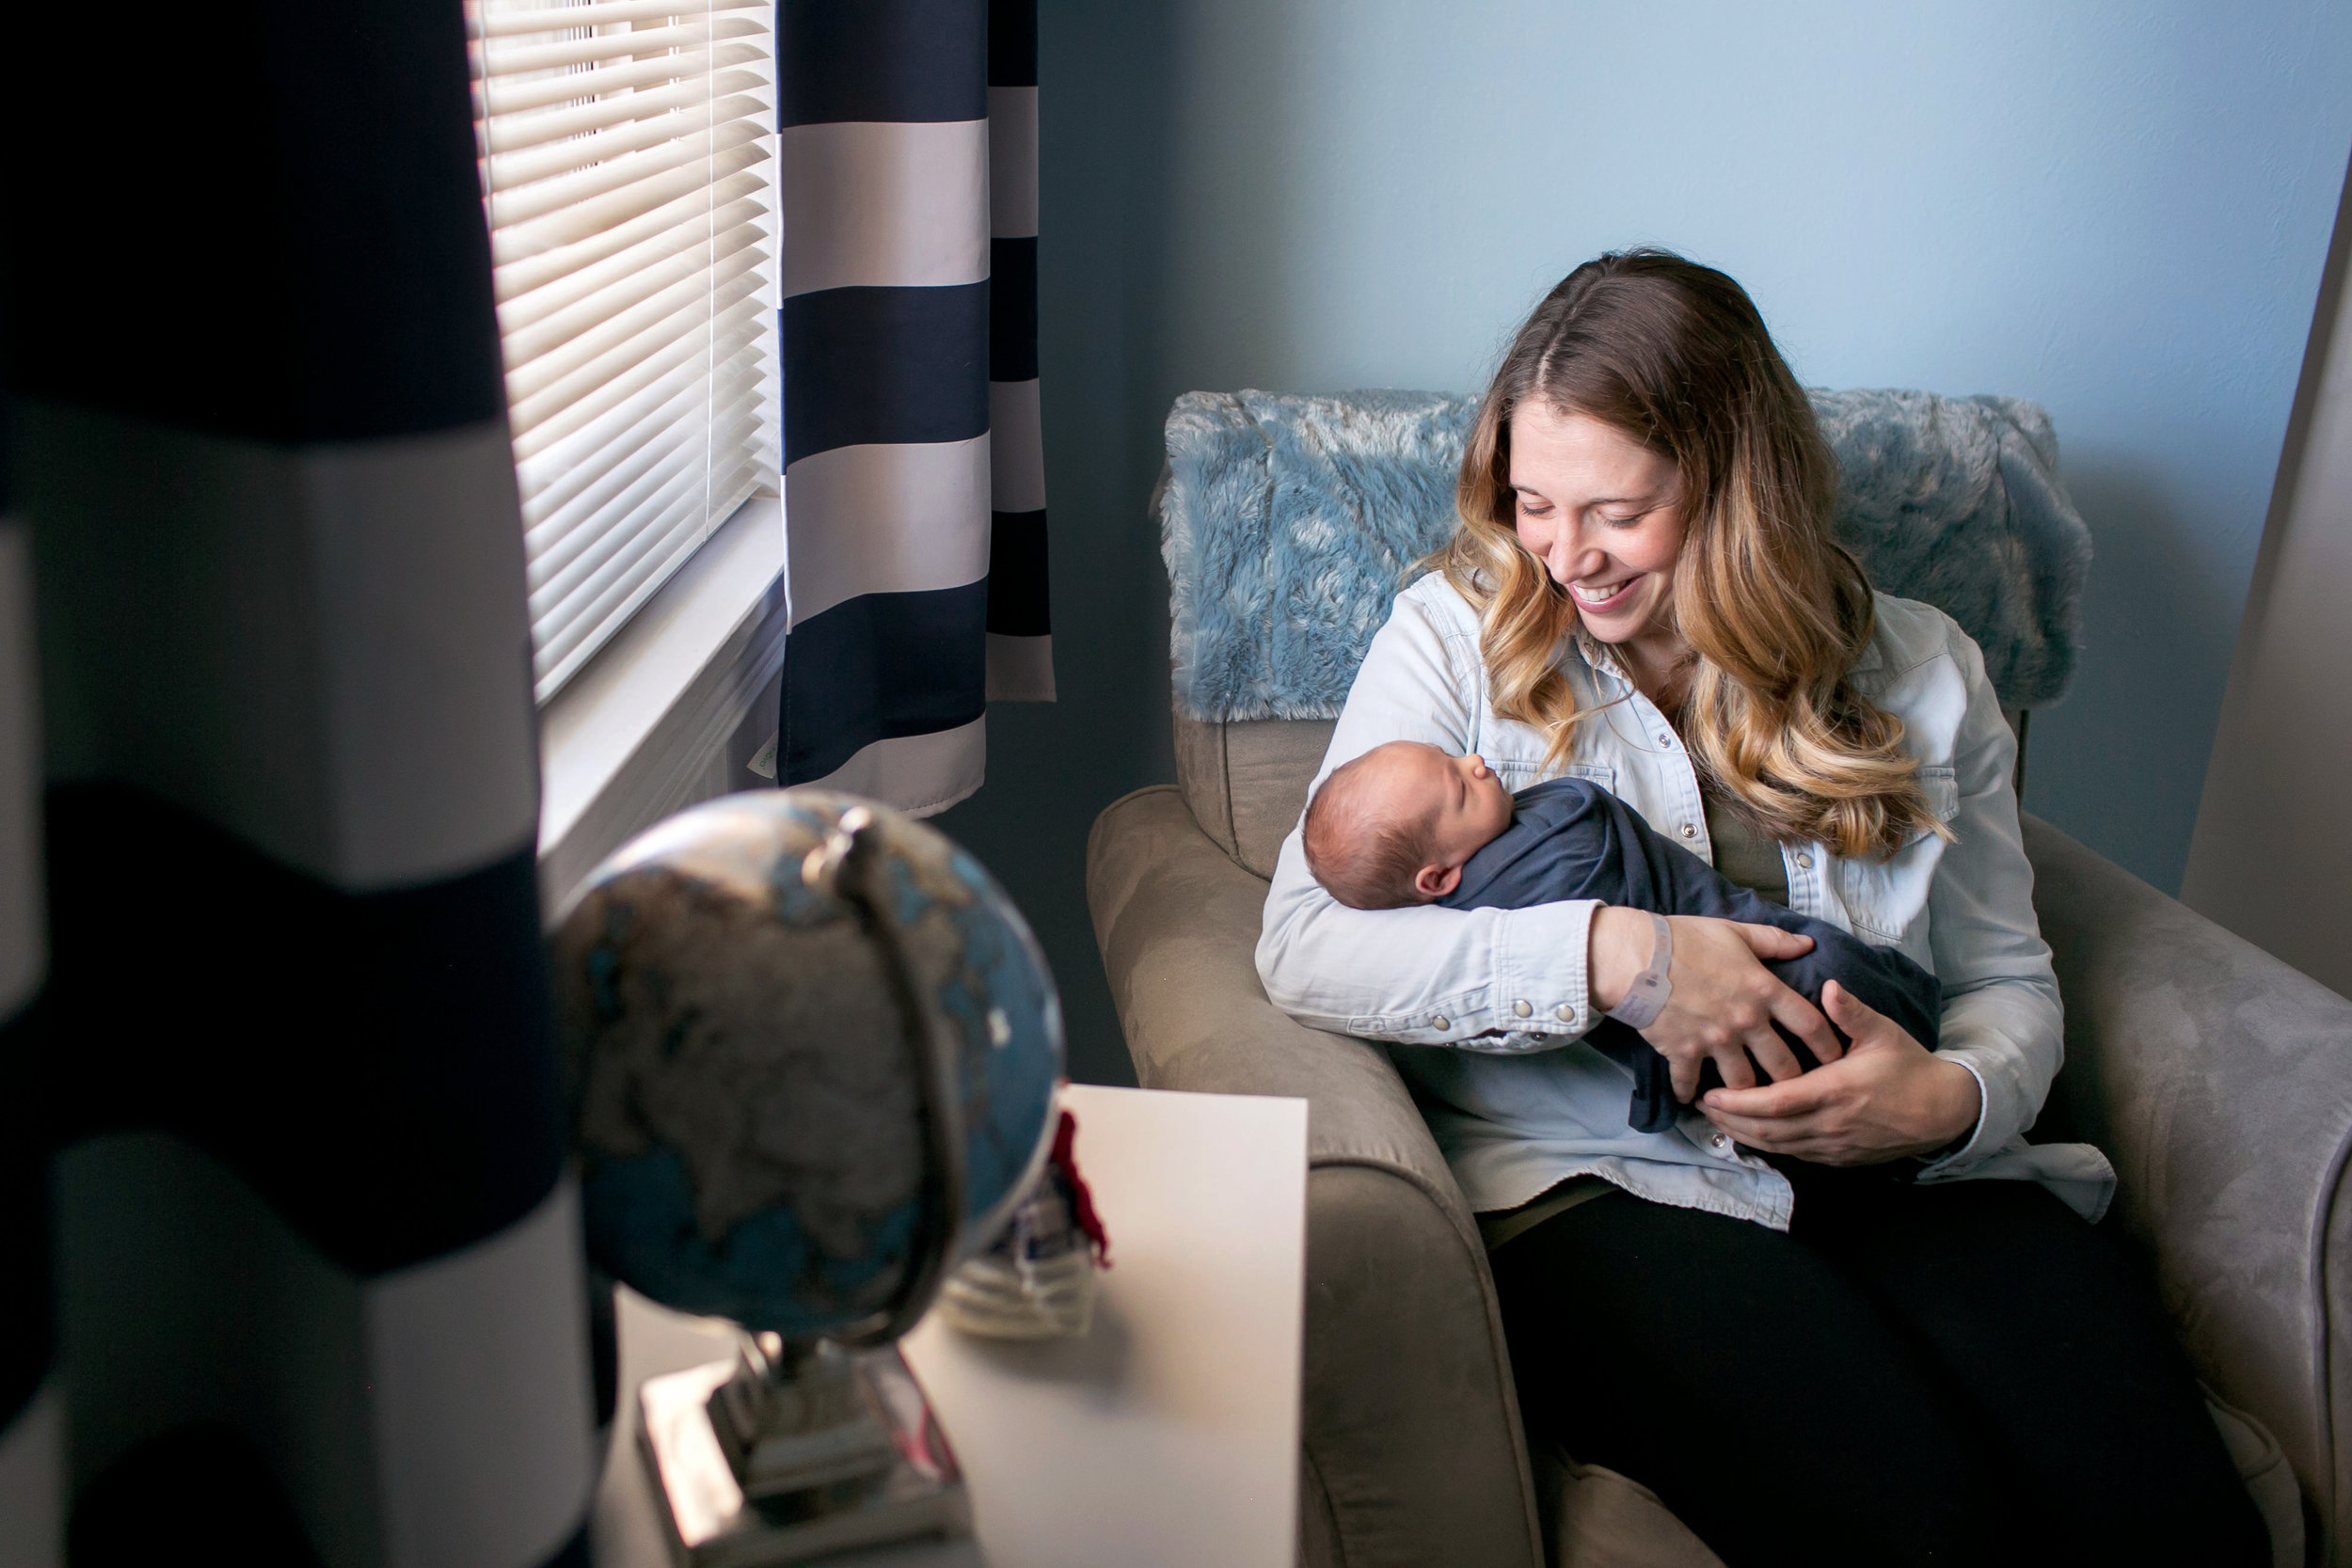 Denver maternity photographer, Denver in-home lifestyle photographer, Denver newborn photographer, Boulder maternity photographer, Boulder newborn photographer